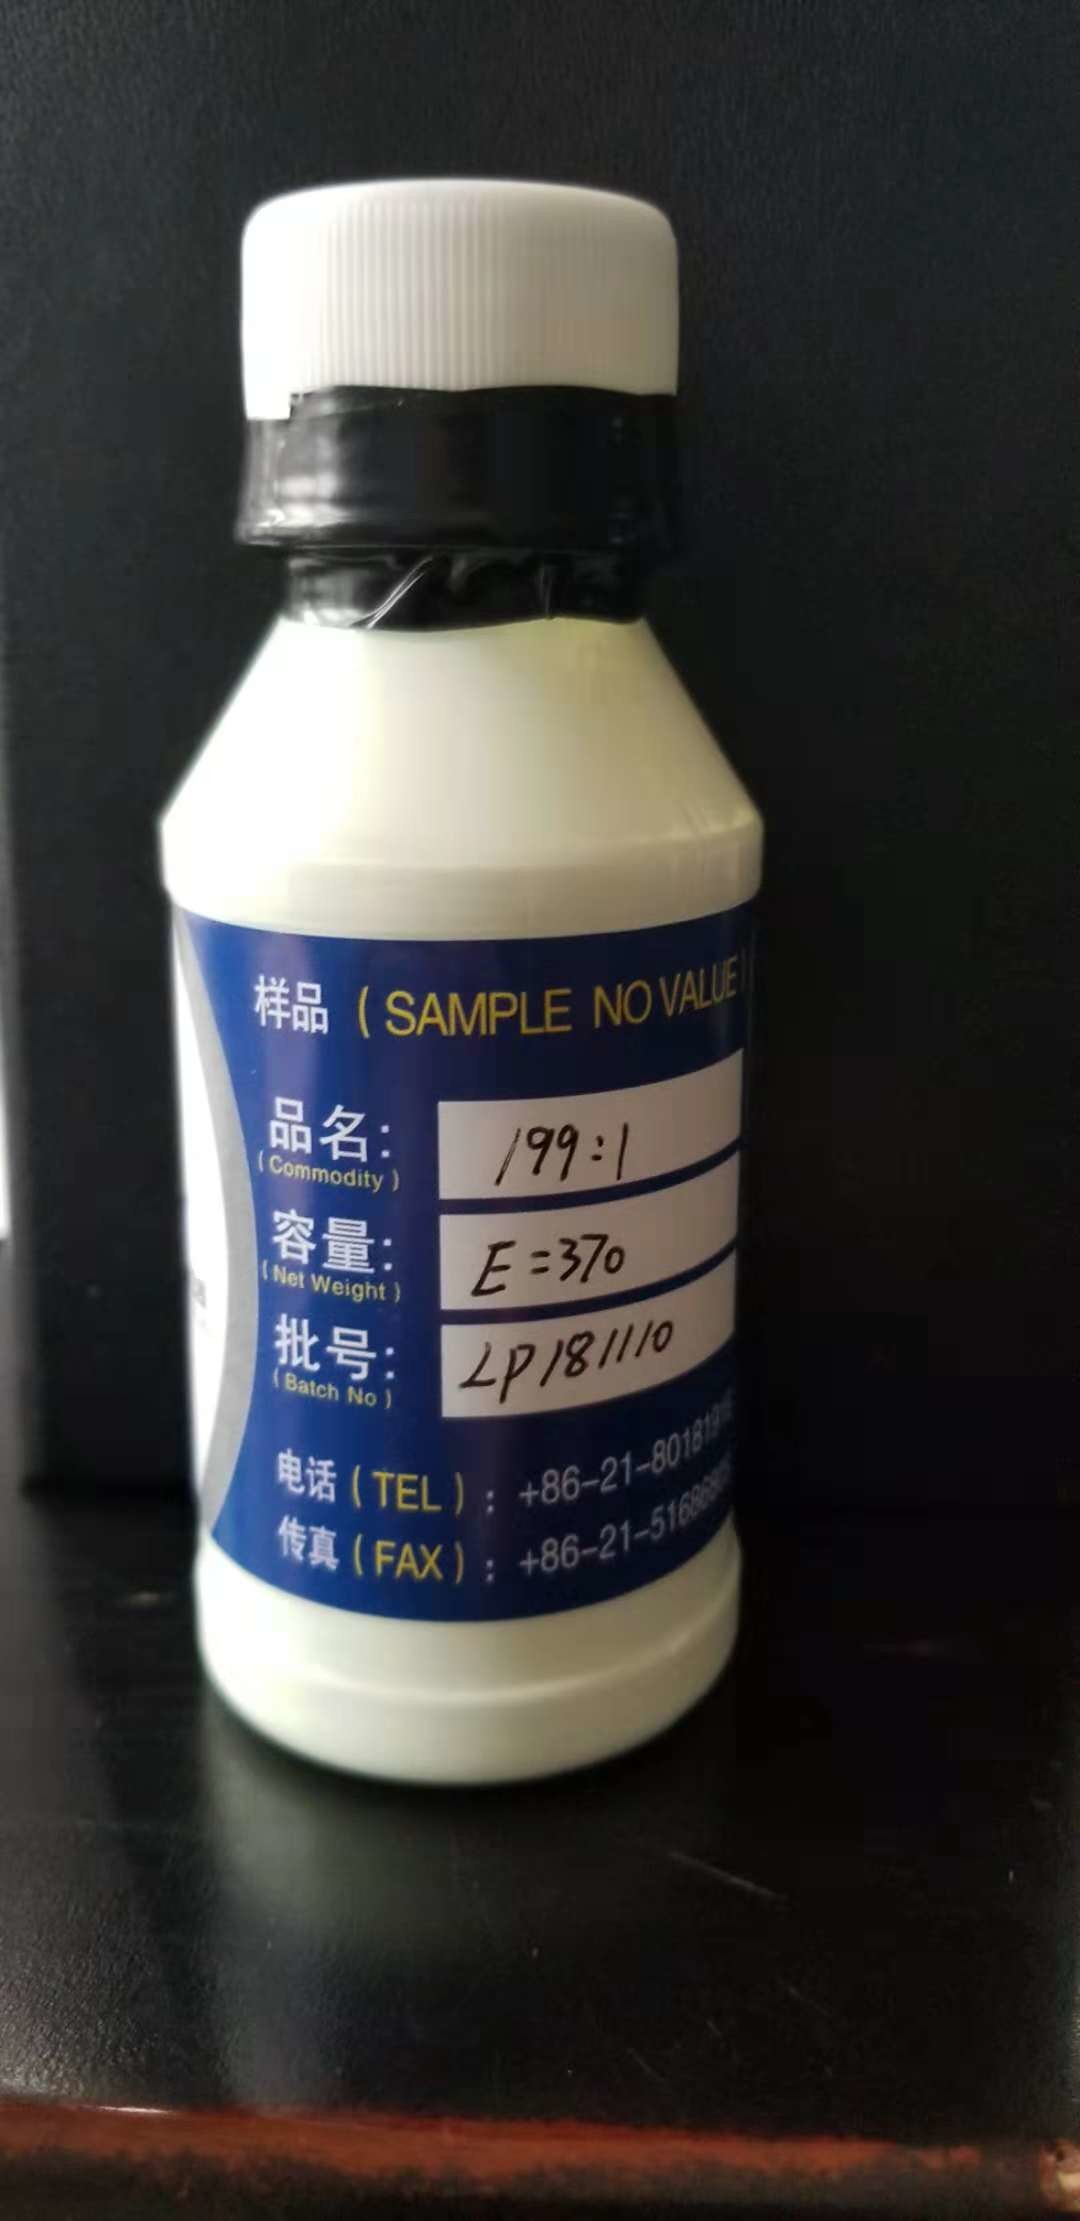 China Low temperture High E value of Optical Brightener Agent 199:1 liquid (CAS NO factory